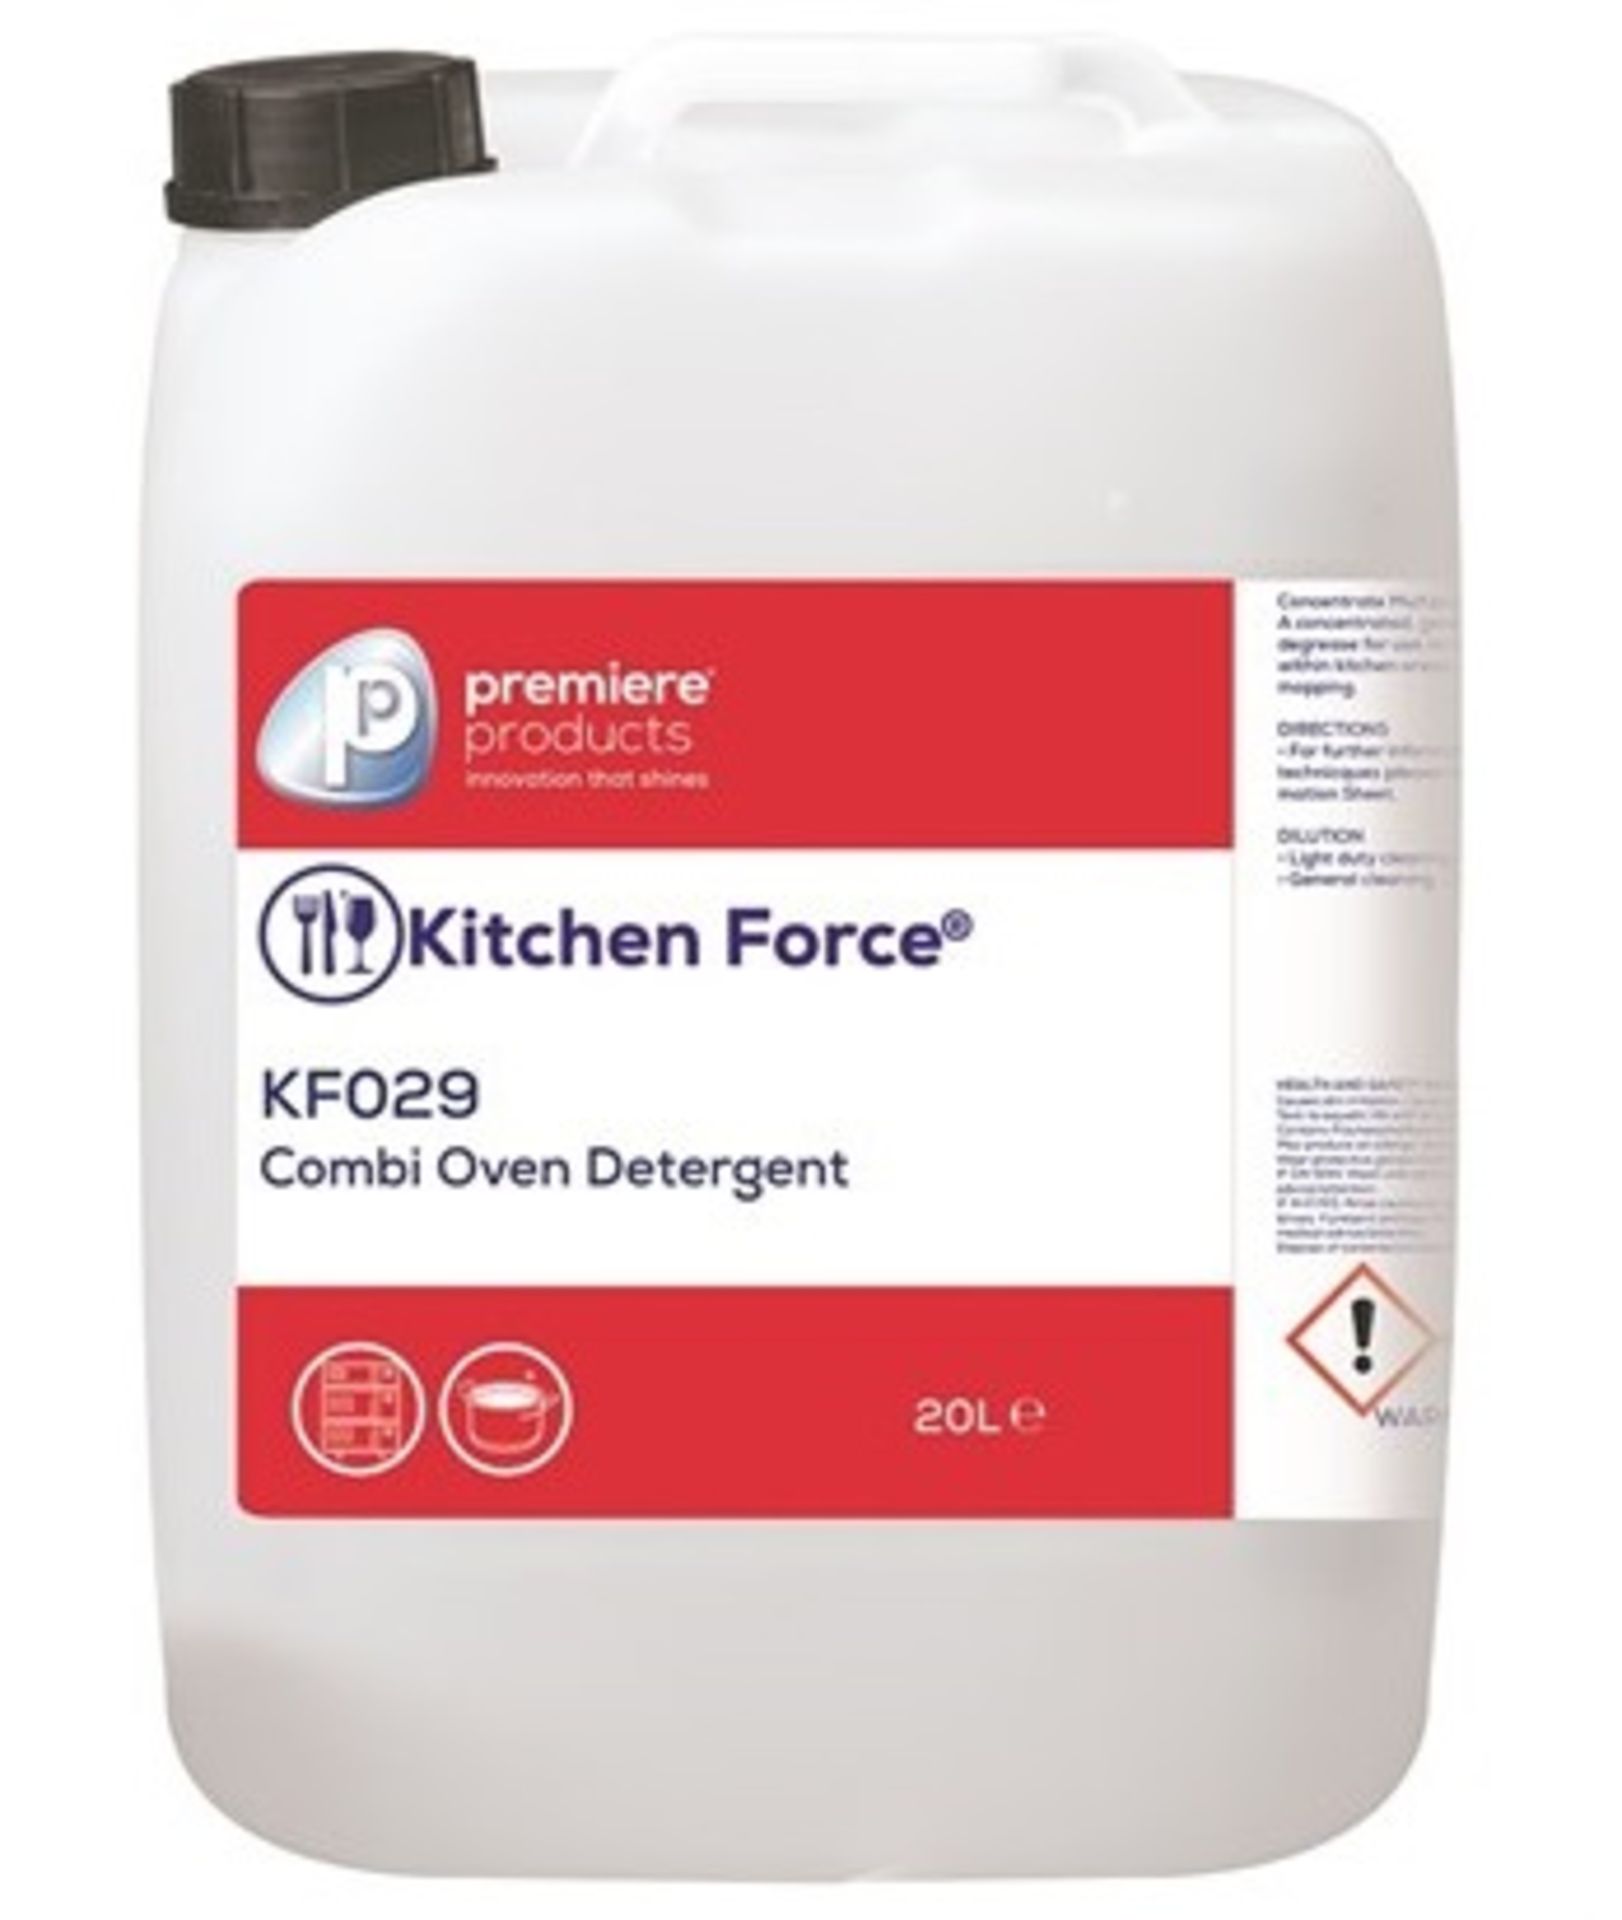 1 x Kitchen Force 20 Litre Combi Oven Detergent - Premiere Products - Includes 1 x 20 Litre Containe